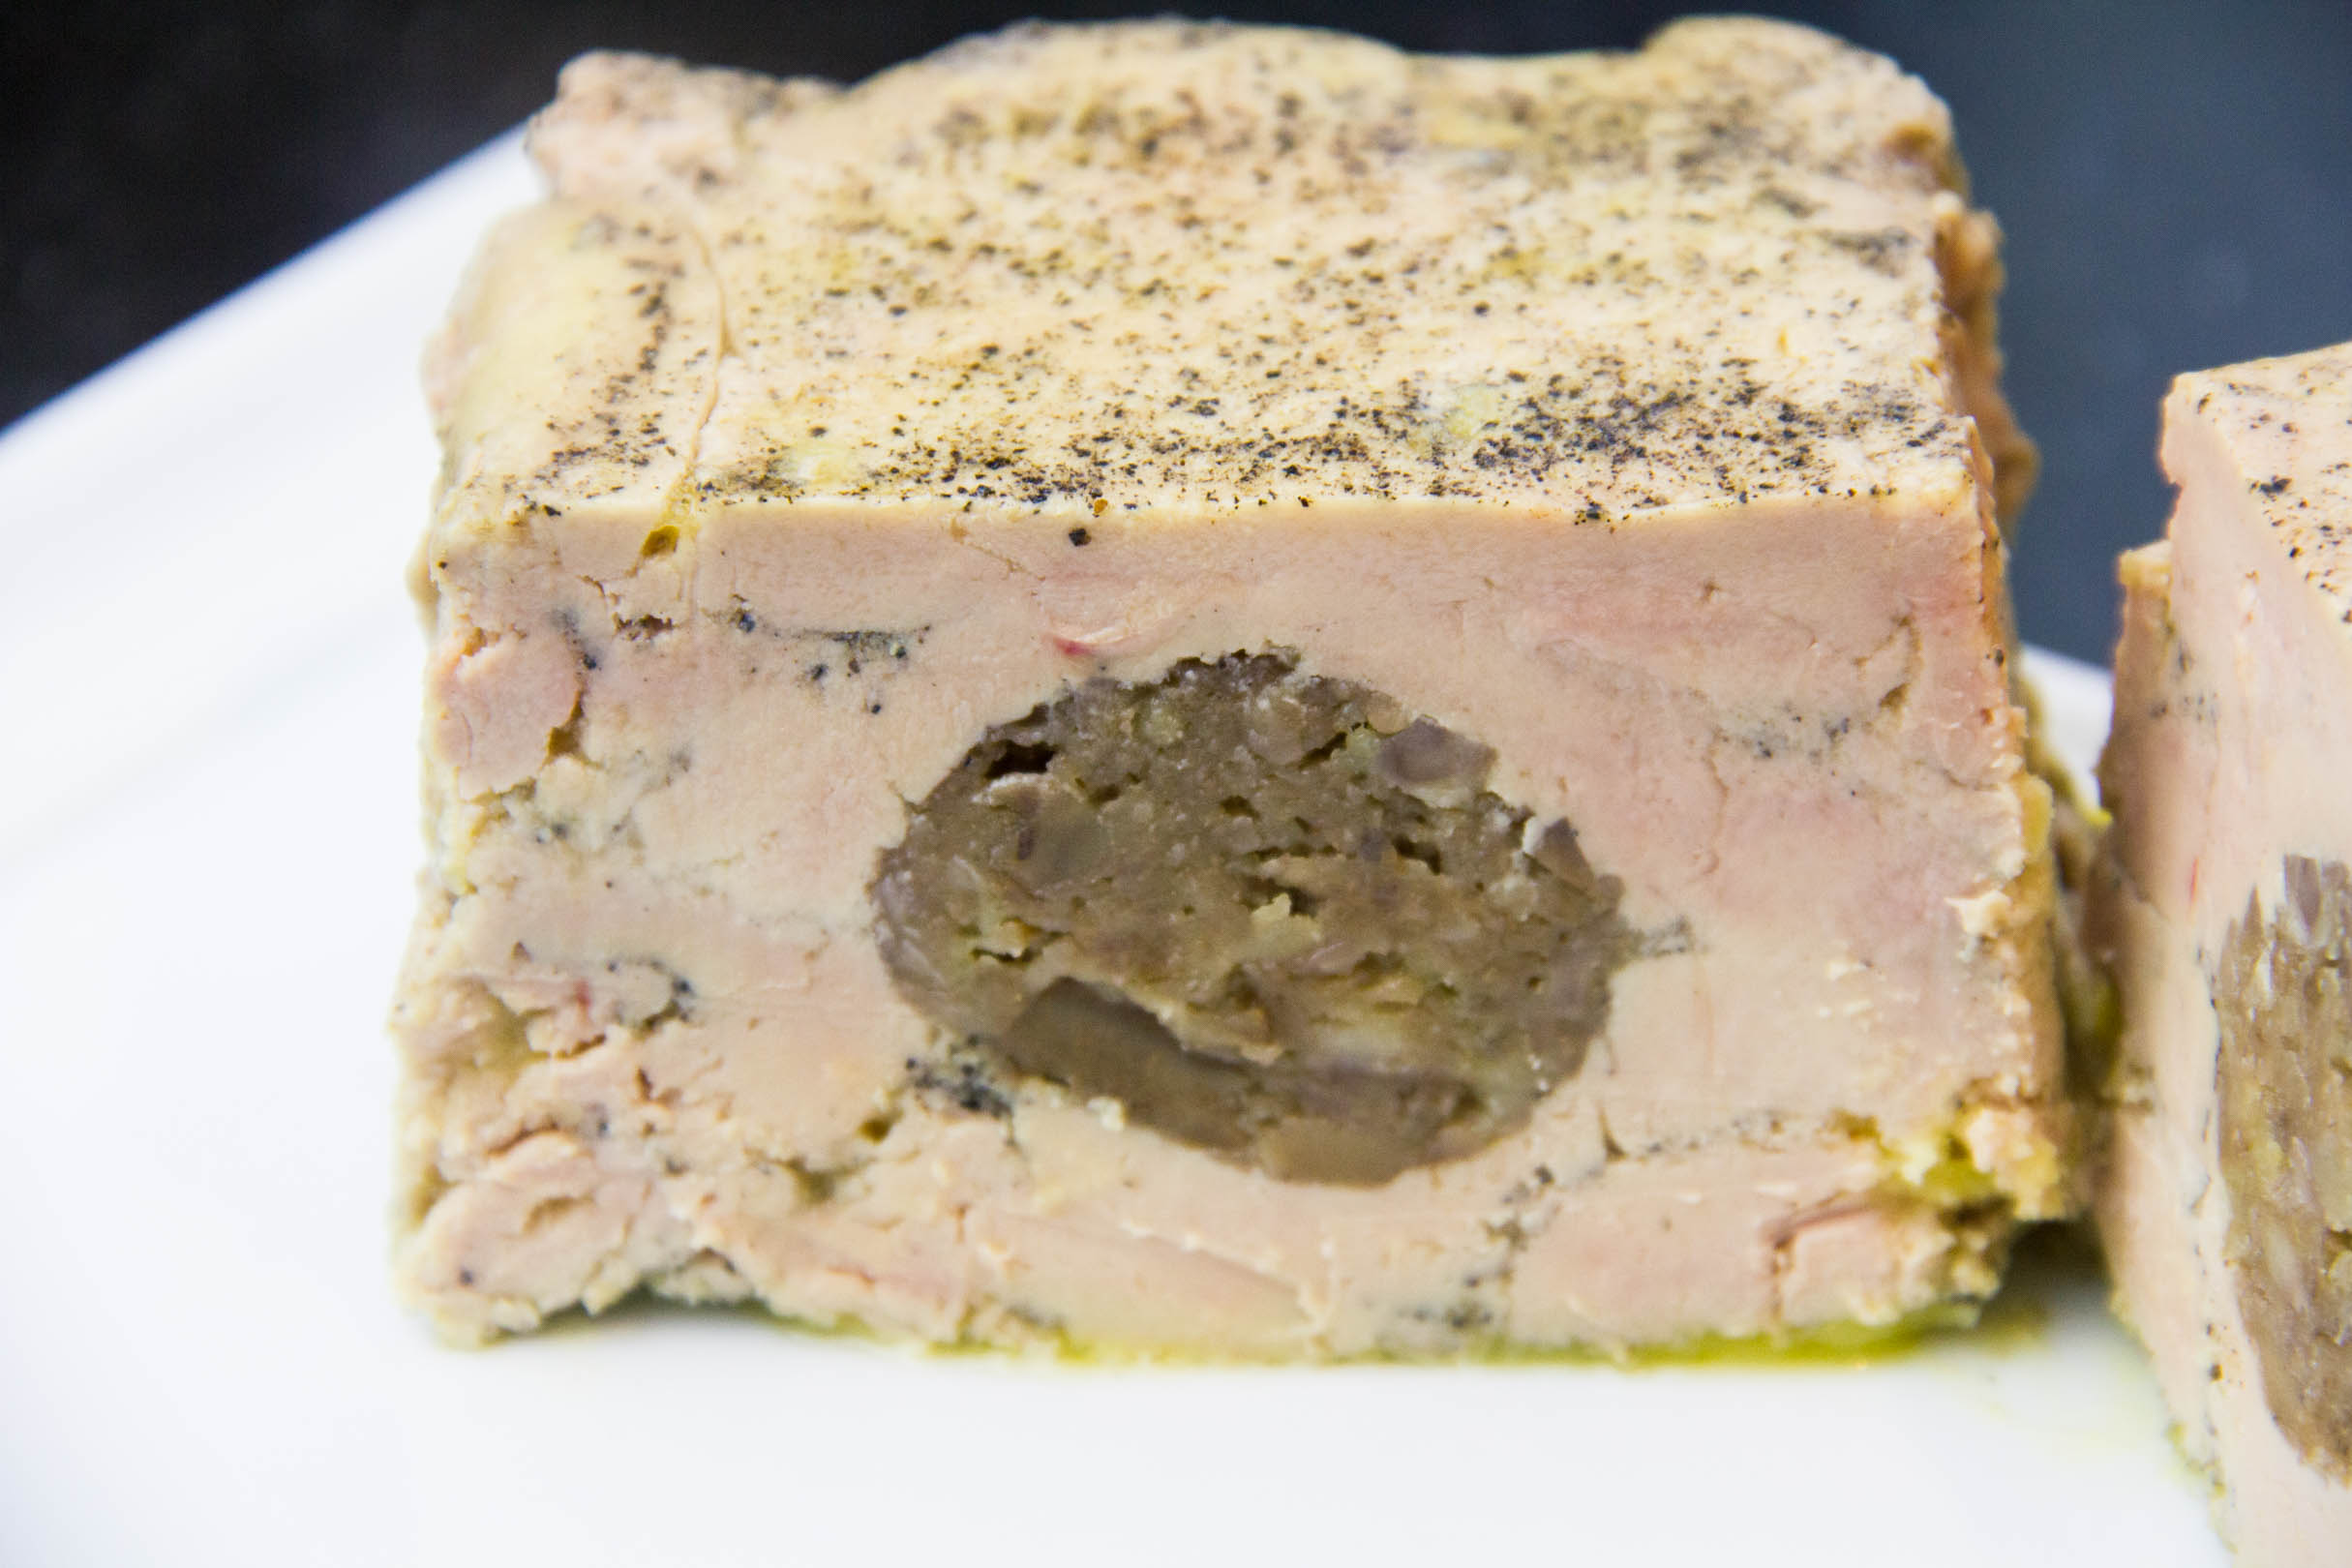 Terrine de foie gras maison aux marrons et au cognac - [les] Gourmantissimes